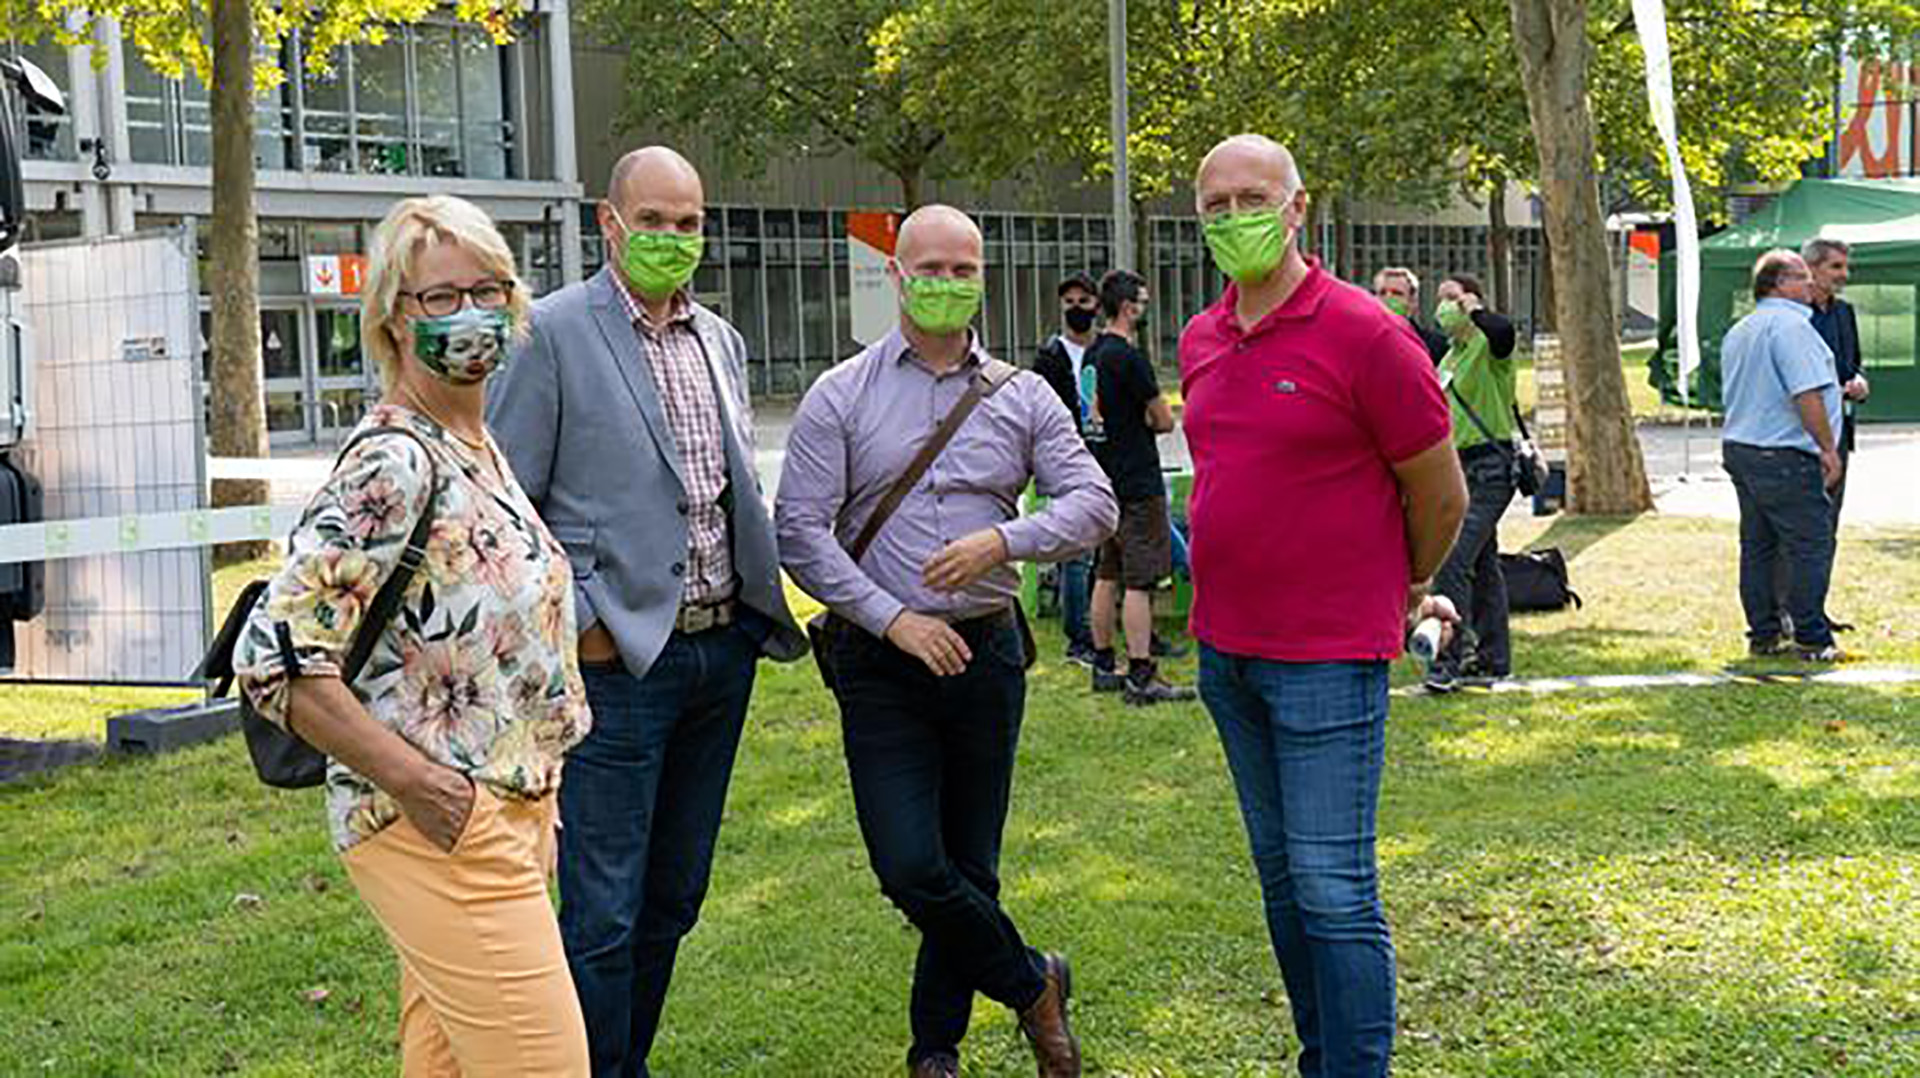 Landschaftsgärtner-Cup 2020 - Masken ein Muss für Besucher, mittlerweile normal